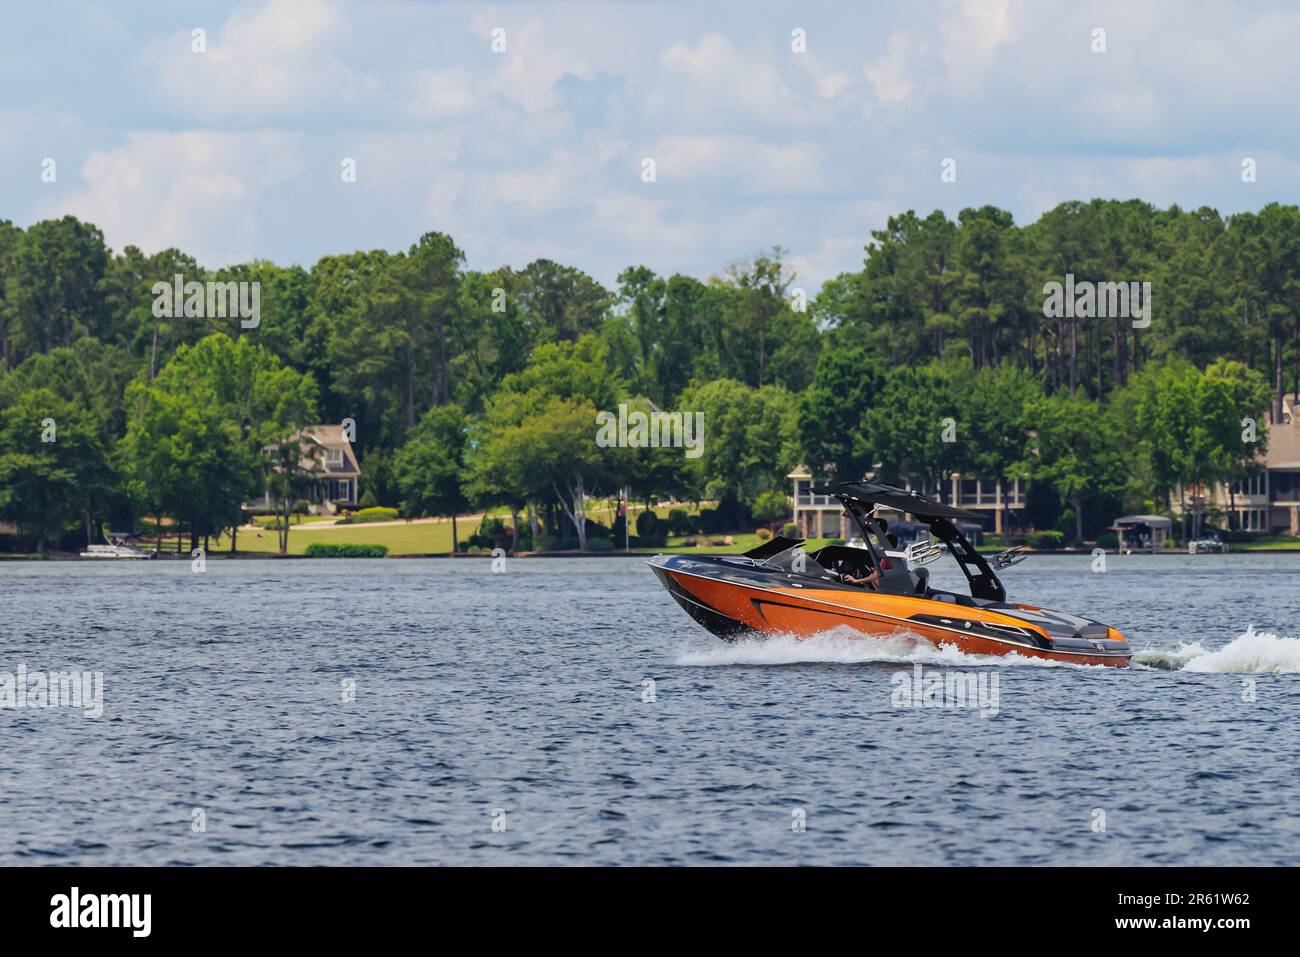 Boater on orange wakeboard ski boat enjoying summer day on the lake. Stock Photo